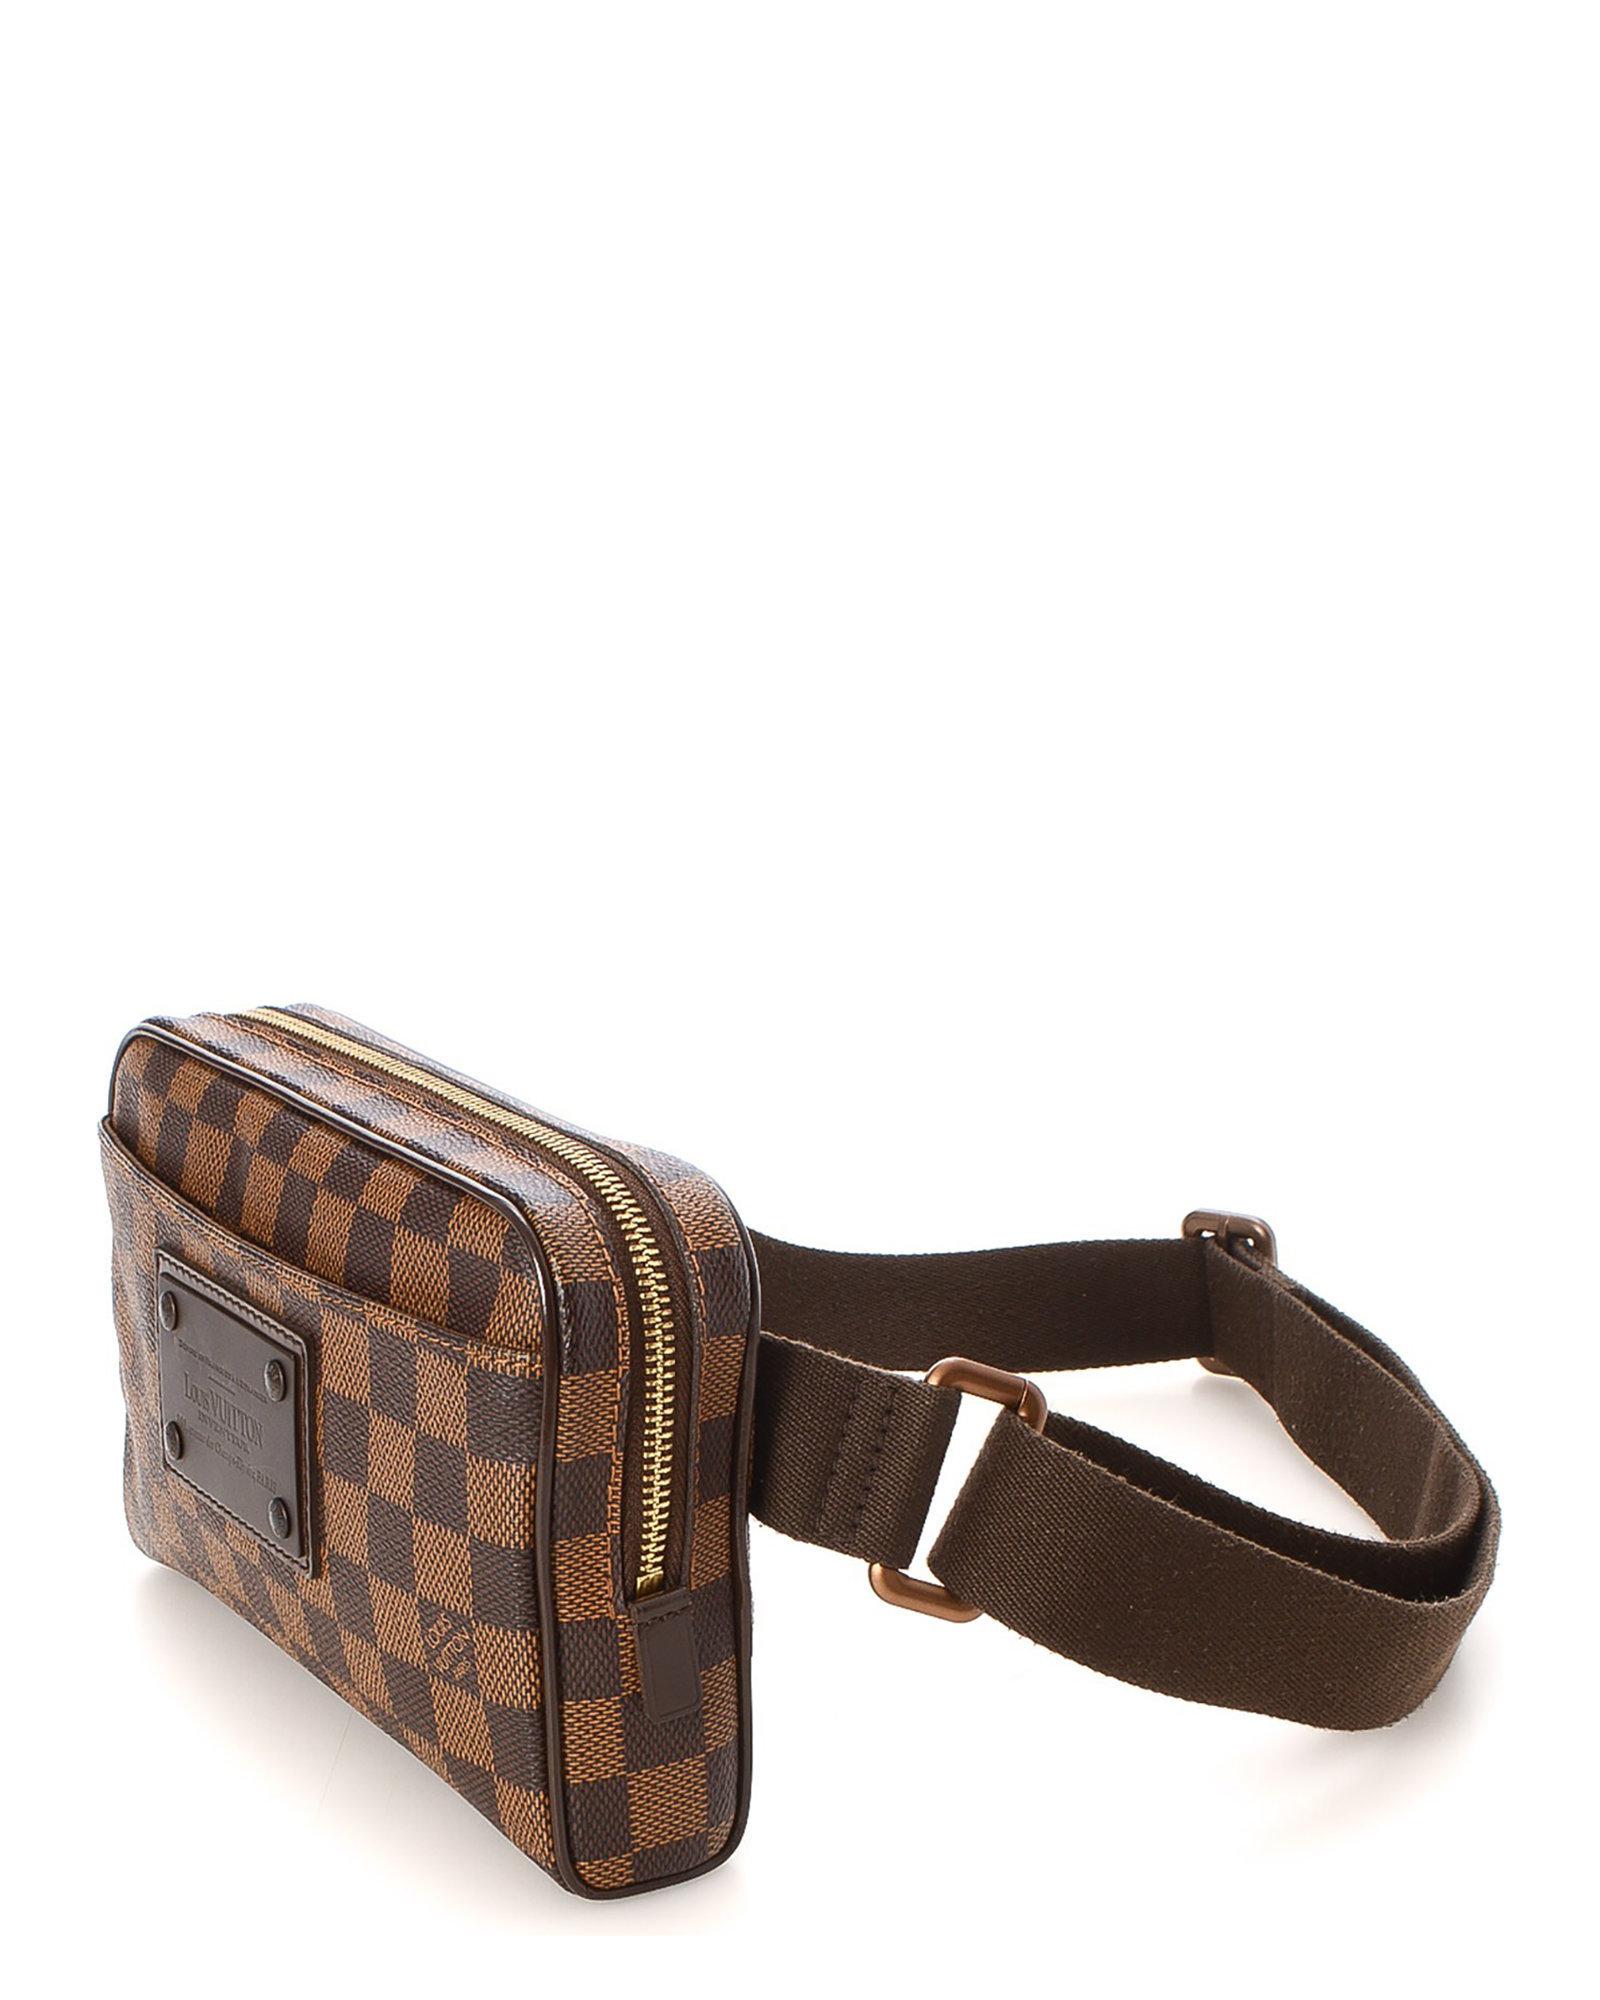 bag: Louis Vuitton Waist Belt Bag Damier Ebene